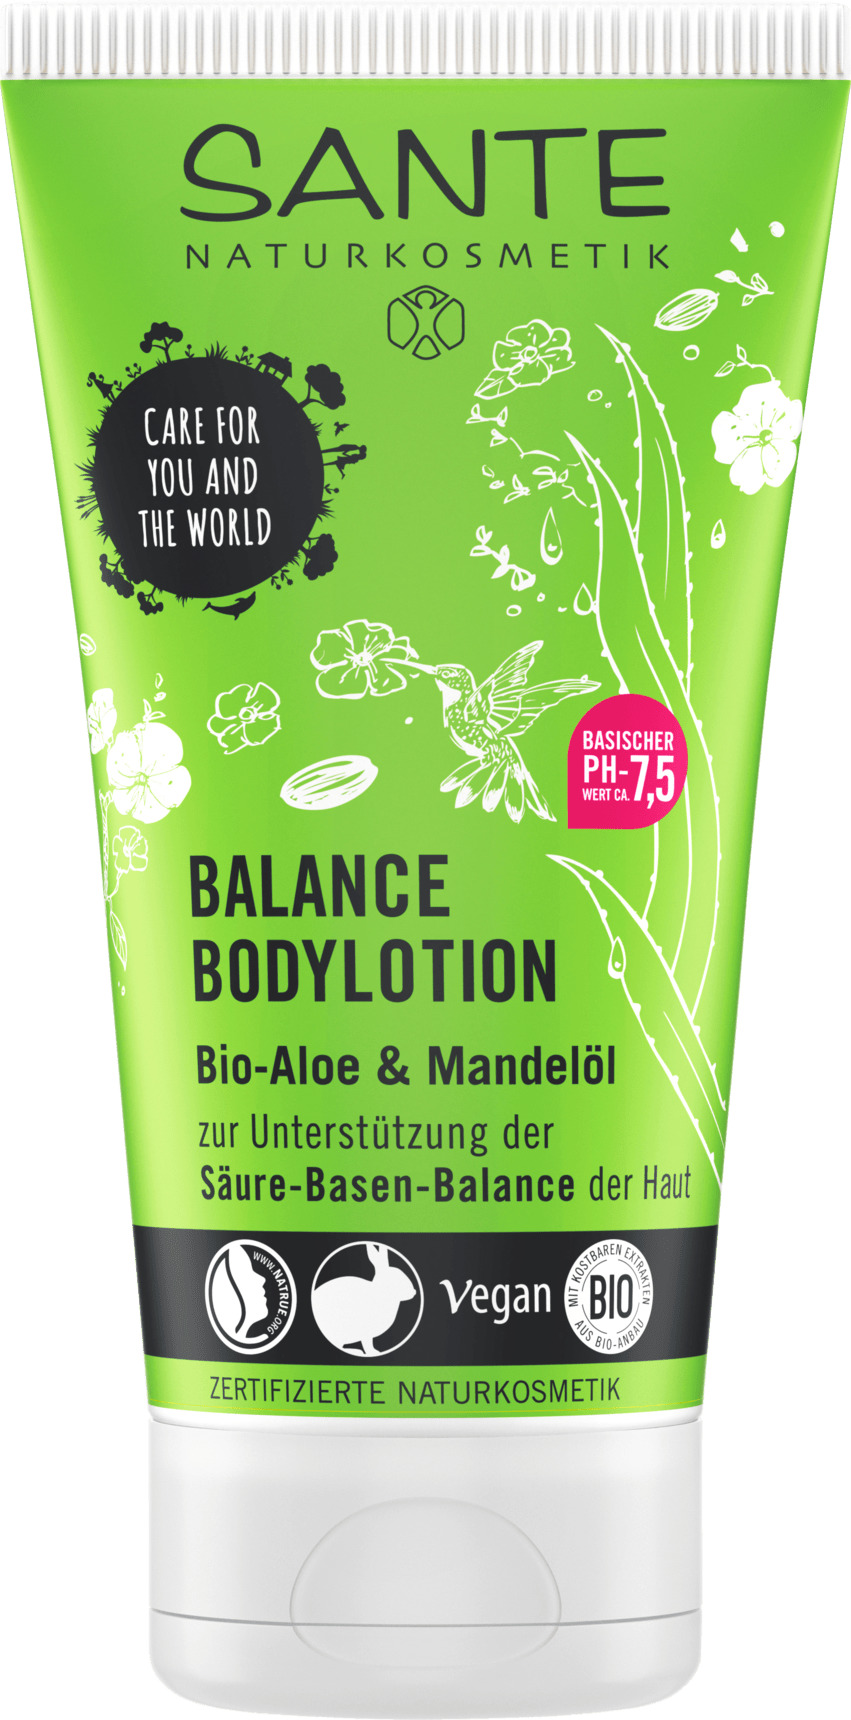 Køb Sante Body Lotion Balance billigt her! ✓